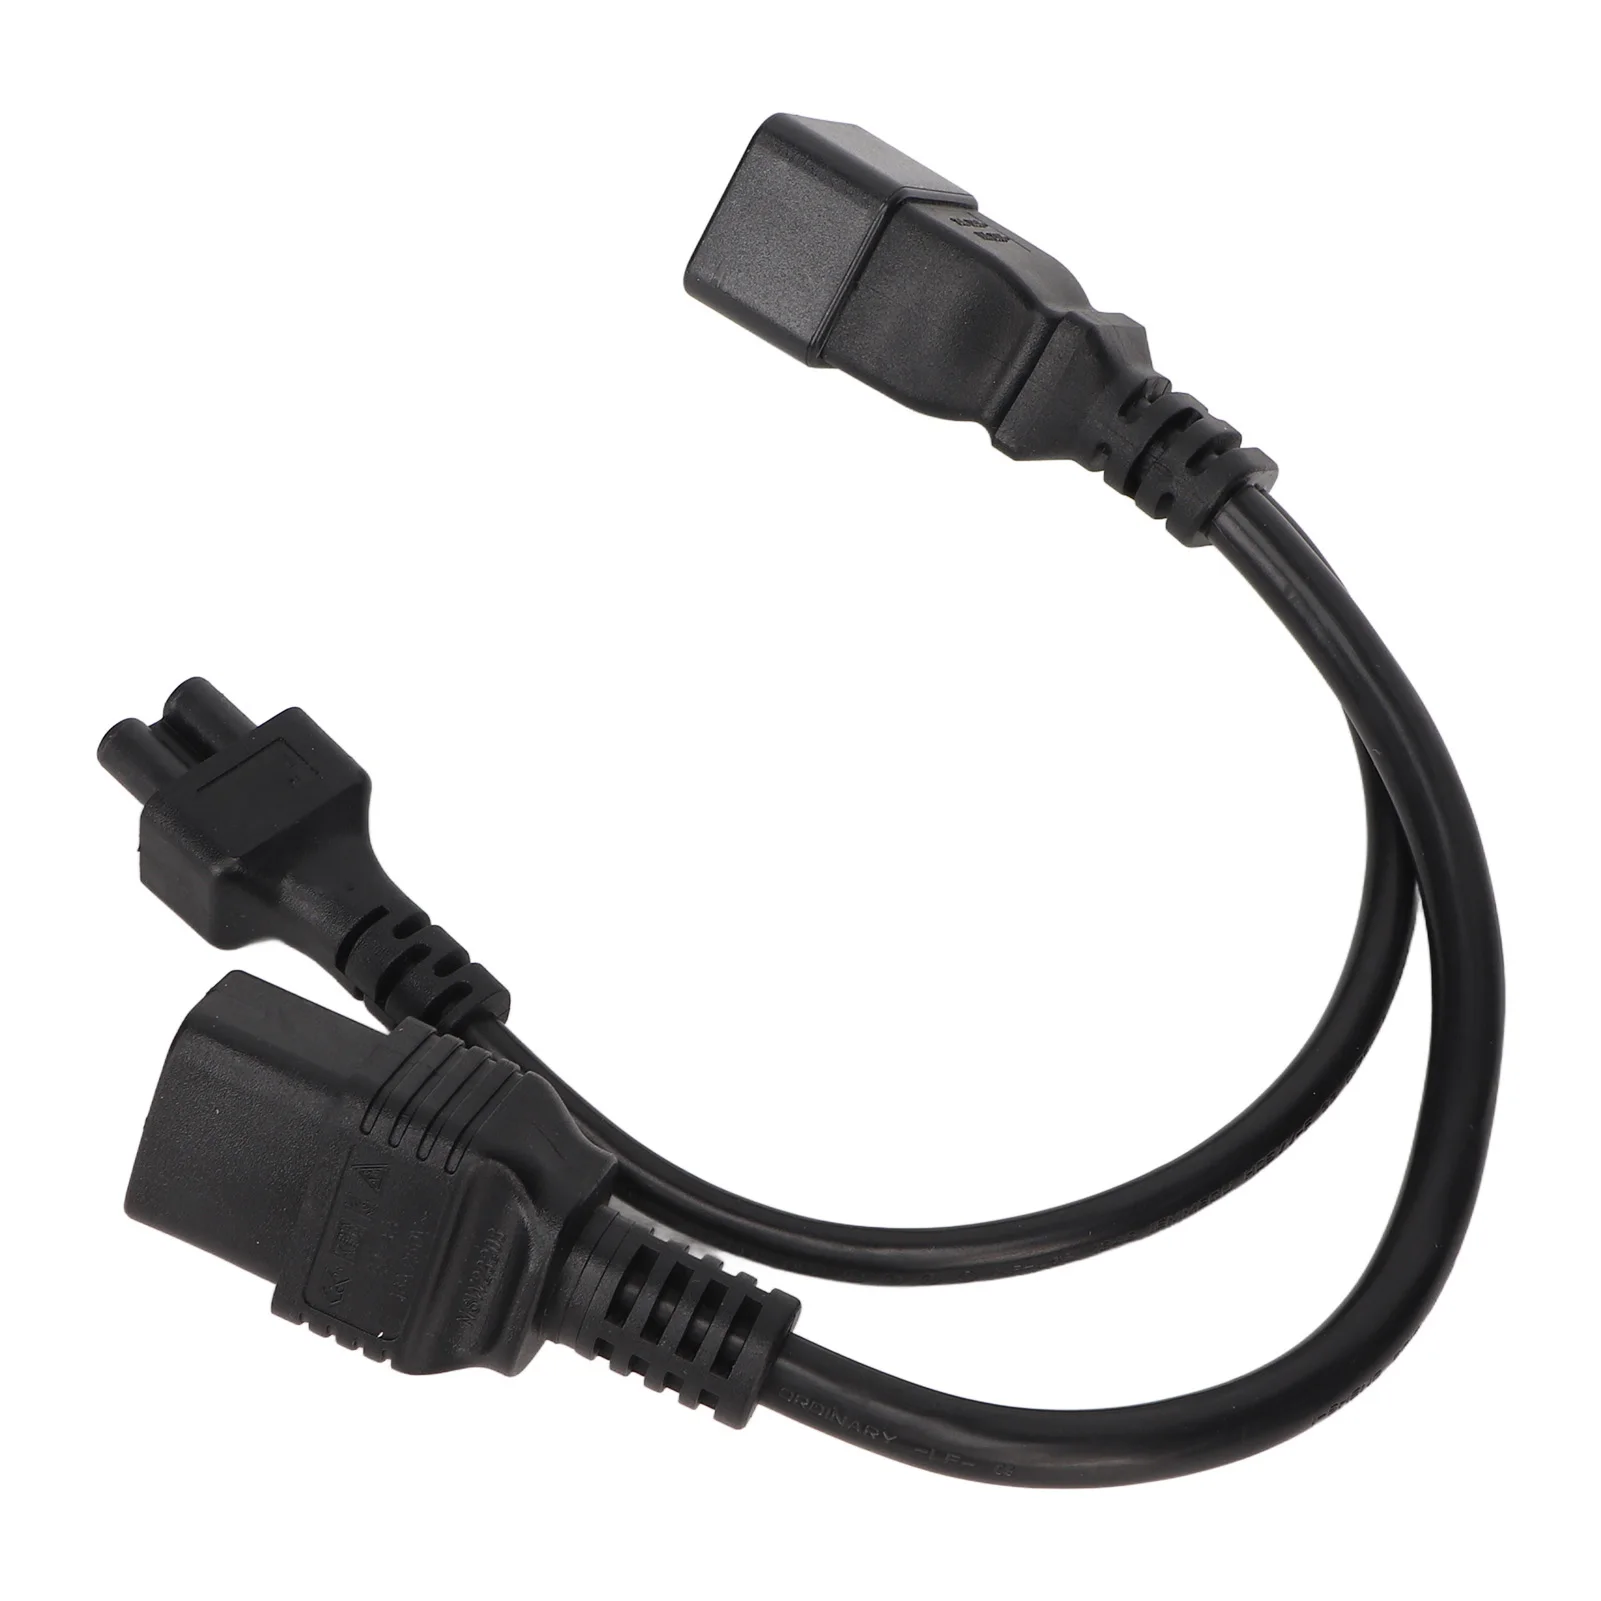 Кабел-сплитер IEC320 Y 1 2 изхода С20 от мъжете до C5 C19 Женски кабел за лаптоп Адаптер за захранване Принтер, Цифров фотоапарат